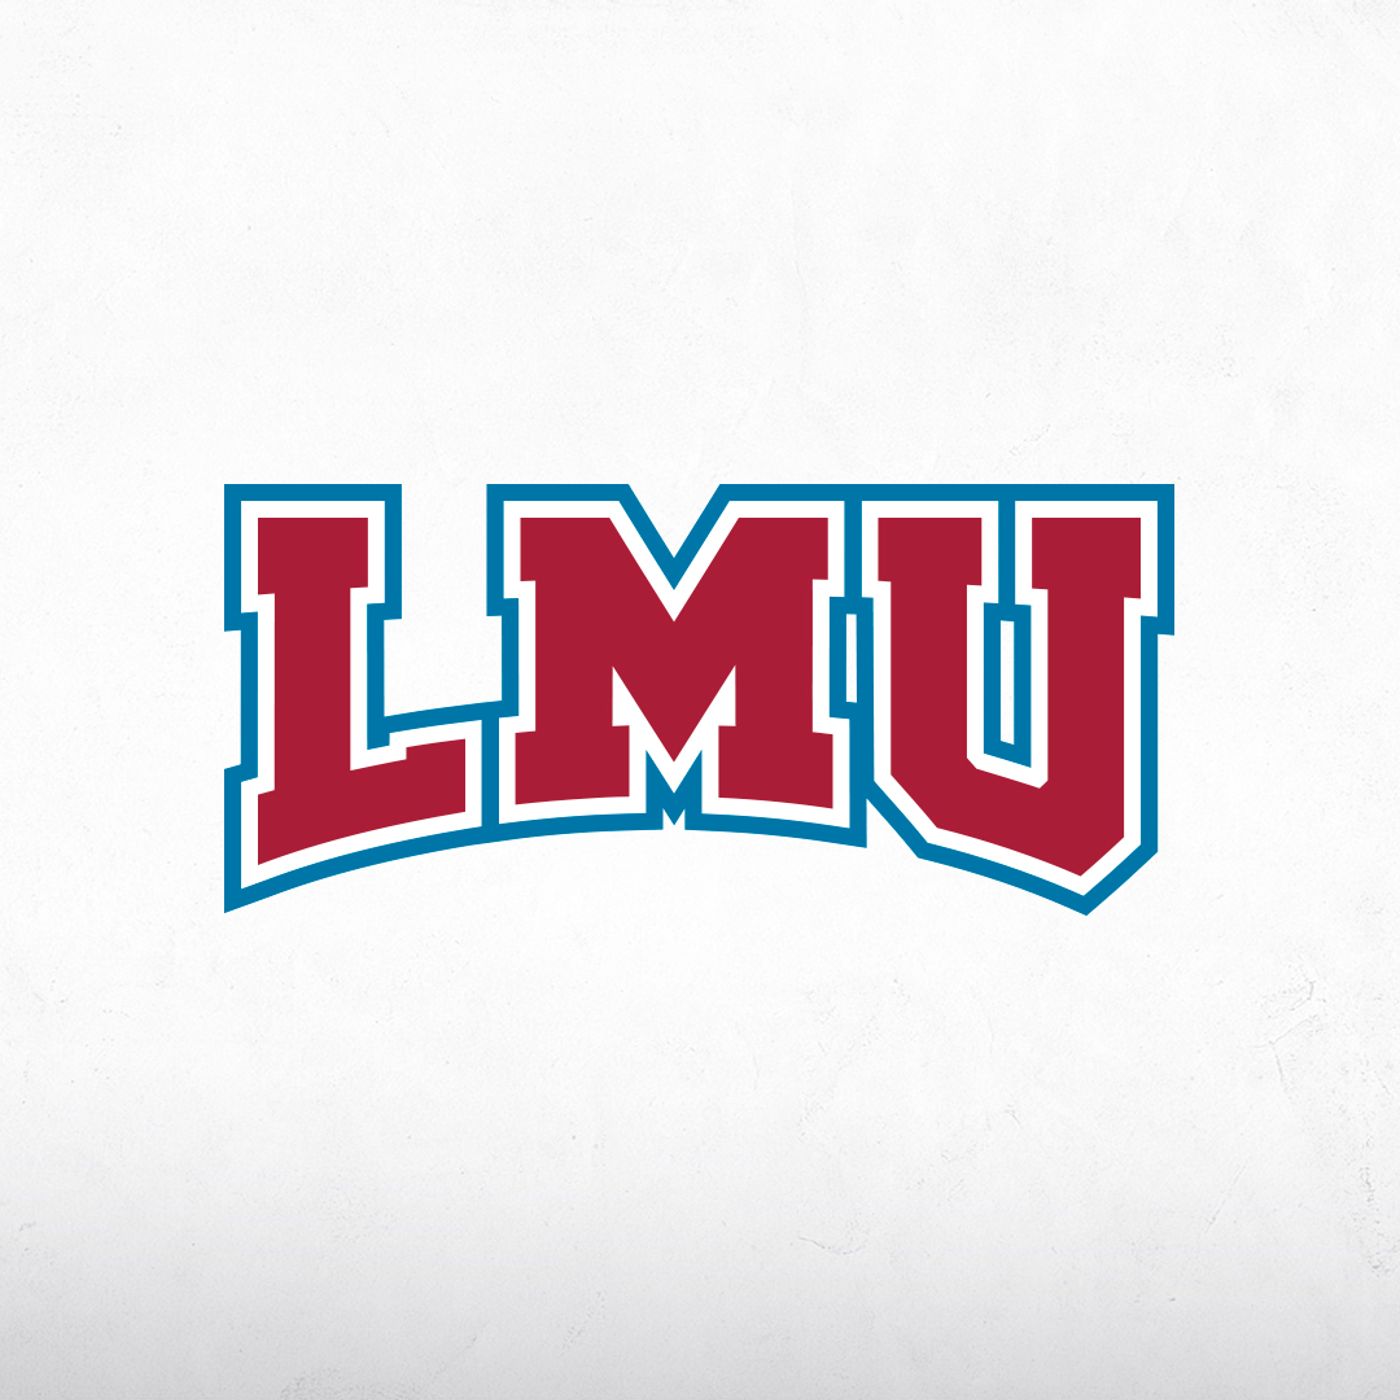 Loyola Marymount University - LMU E63